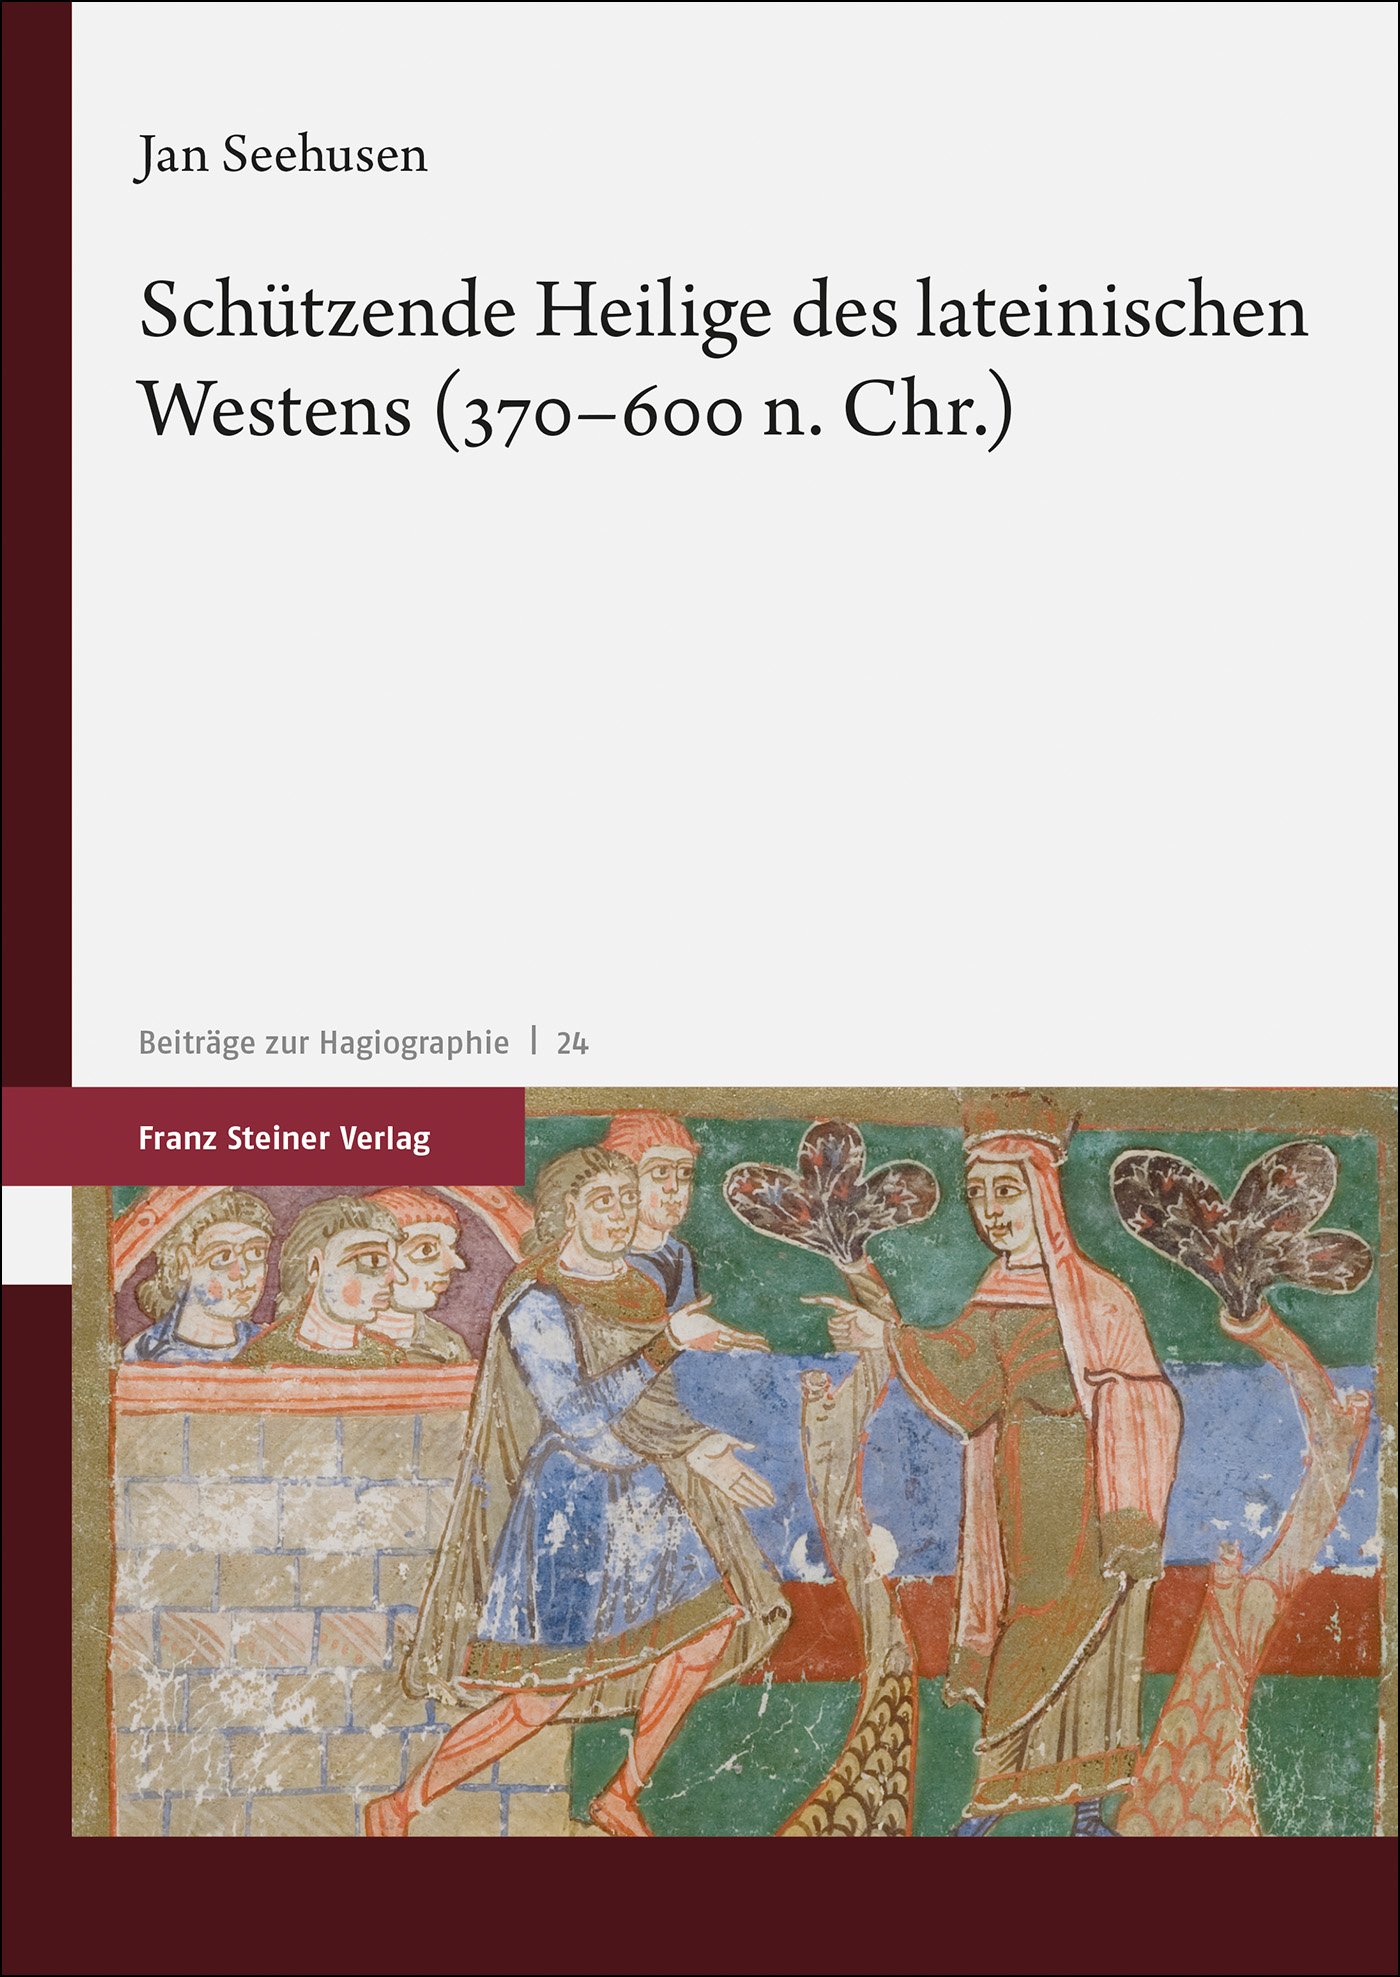 Schützende Heilige des lateinischen Westens (370–600 n. Chr.)